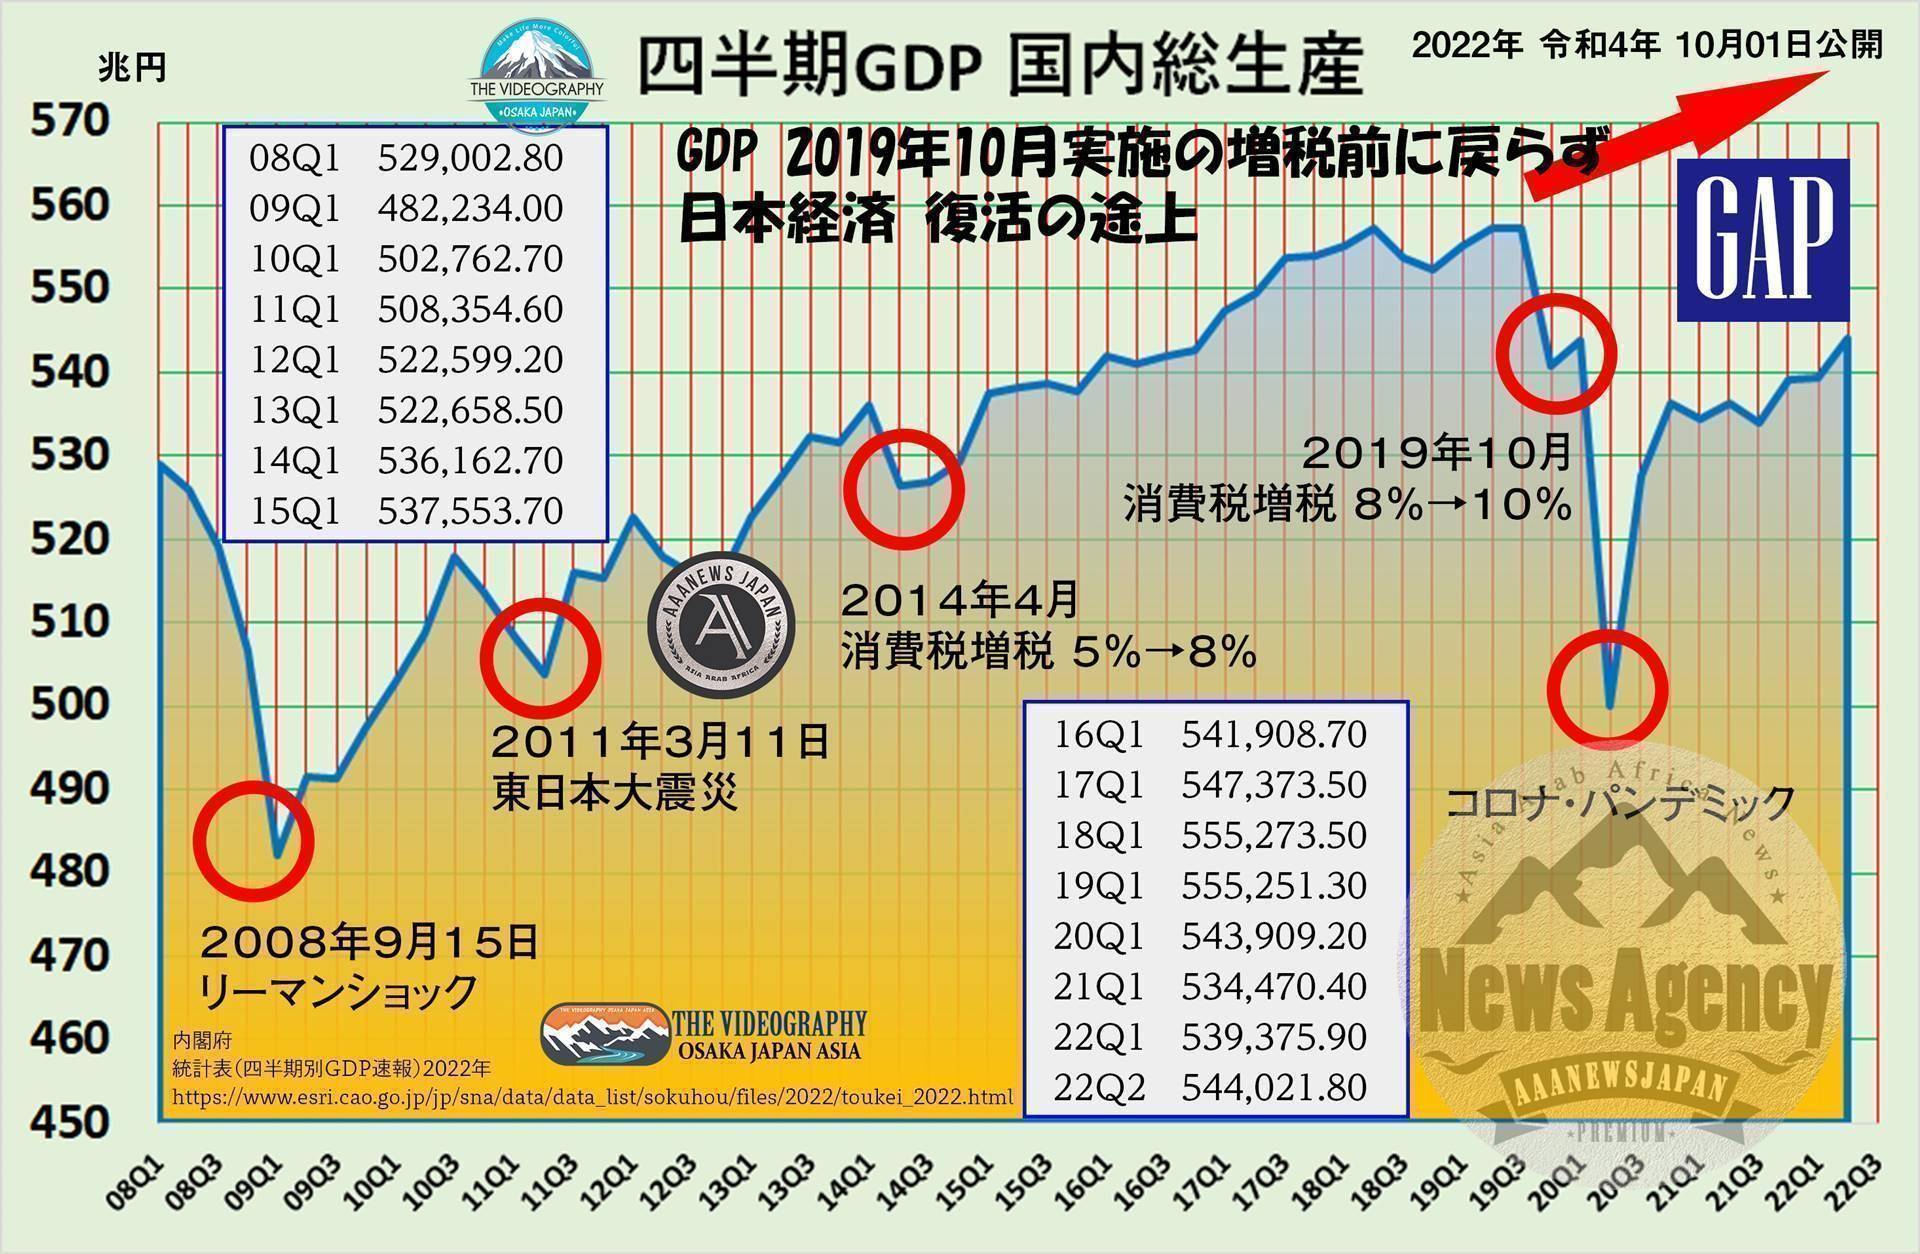 日本の四半期別 国内総生産 GDP 544兆円・2022年4-6月期の日本のGDP 国内総生産 544兆円・コロナパンデミック及び、2018年10月実施の増税前のGDP水準 555兆円に戻らず 日本経済 回復途上 ※グラフ：日本の四半期別GDP Gross Domestic Product 国内総生産 2008年～2022年の推移